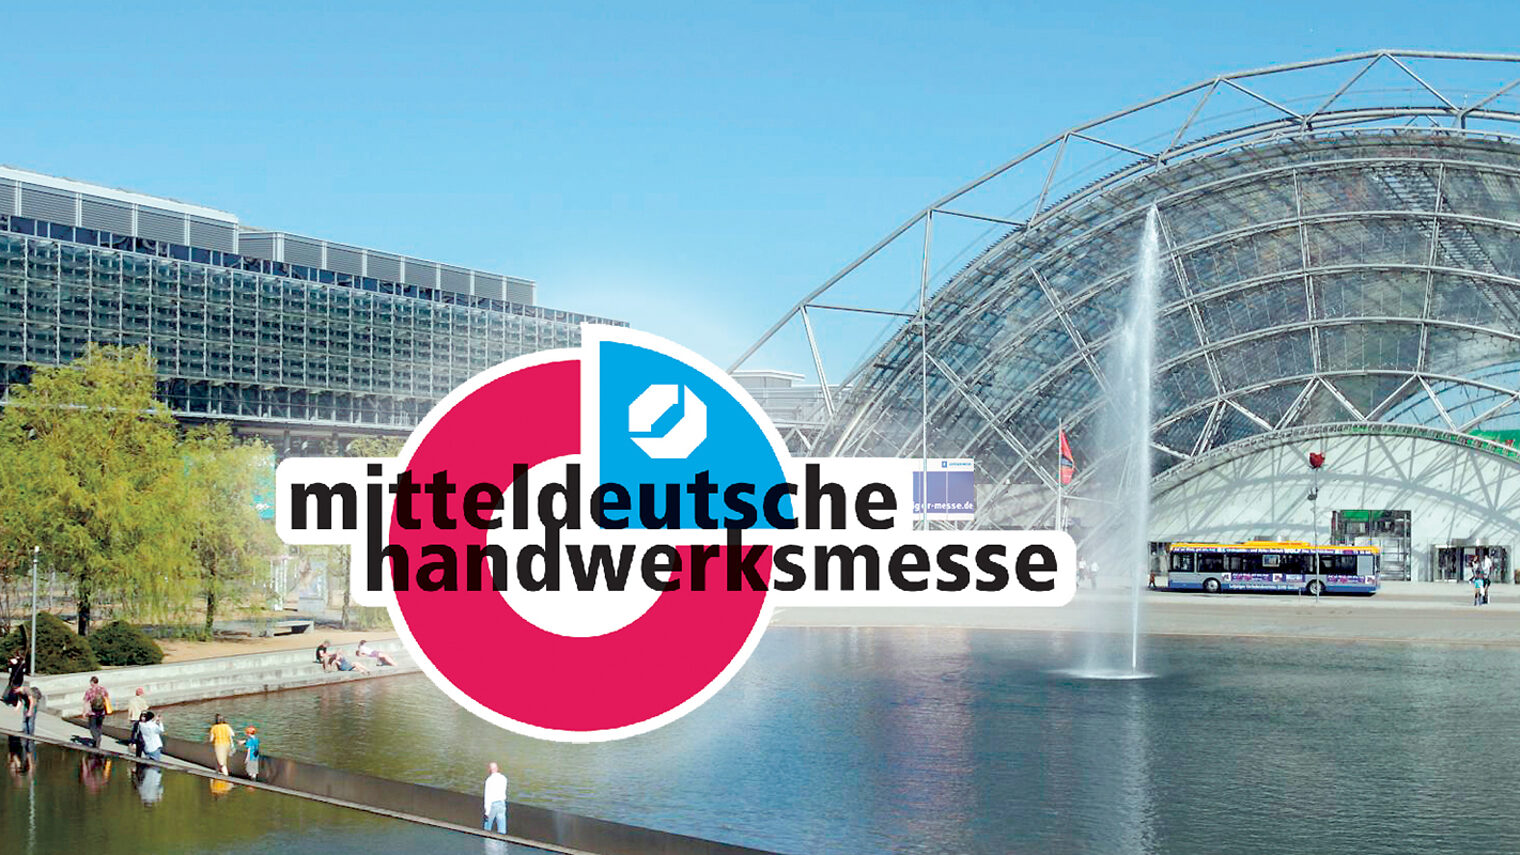 Leipziger Messegelände mit Logo der "mitteldeutschen handwerksmesse"